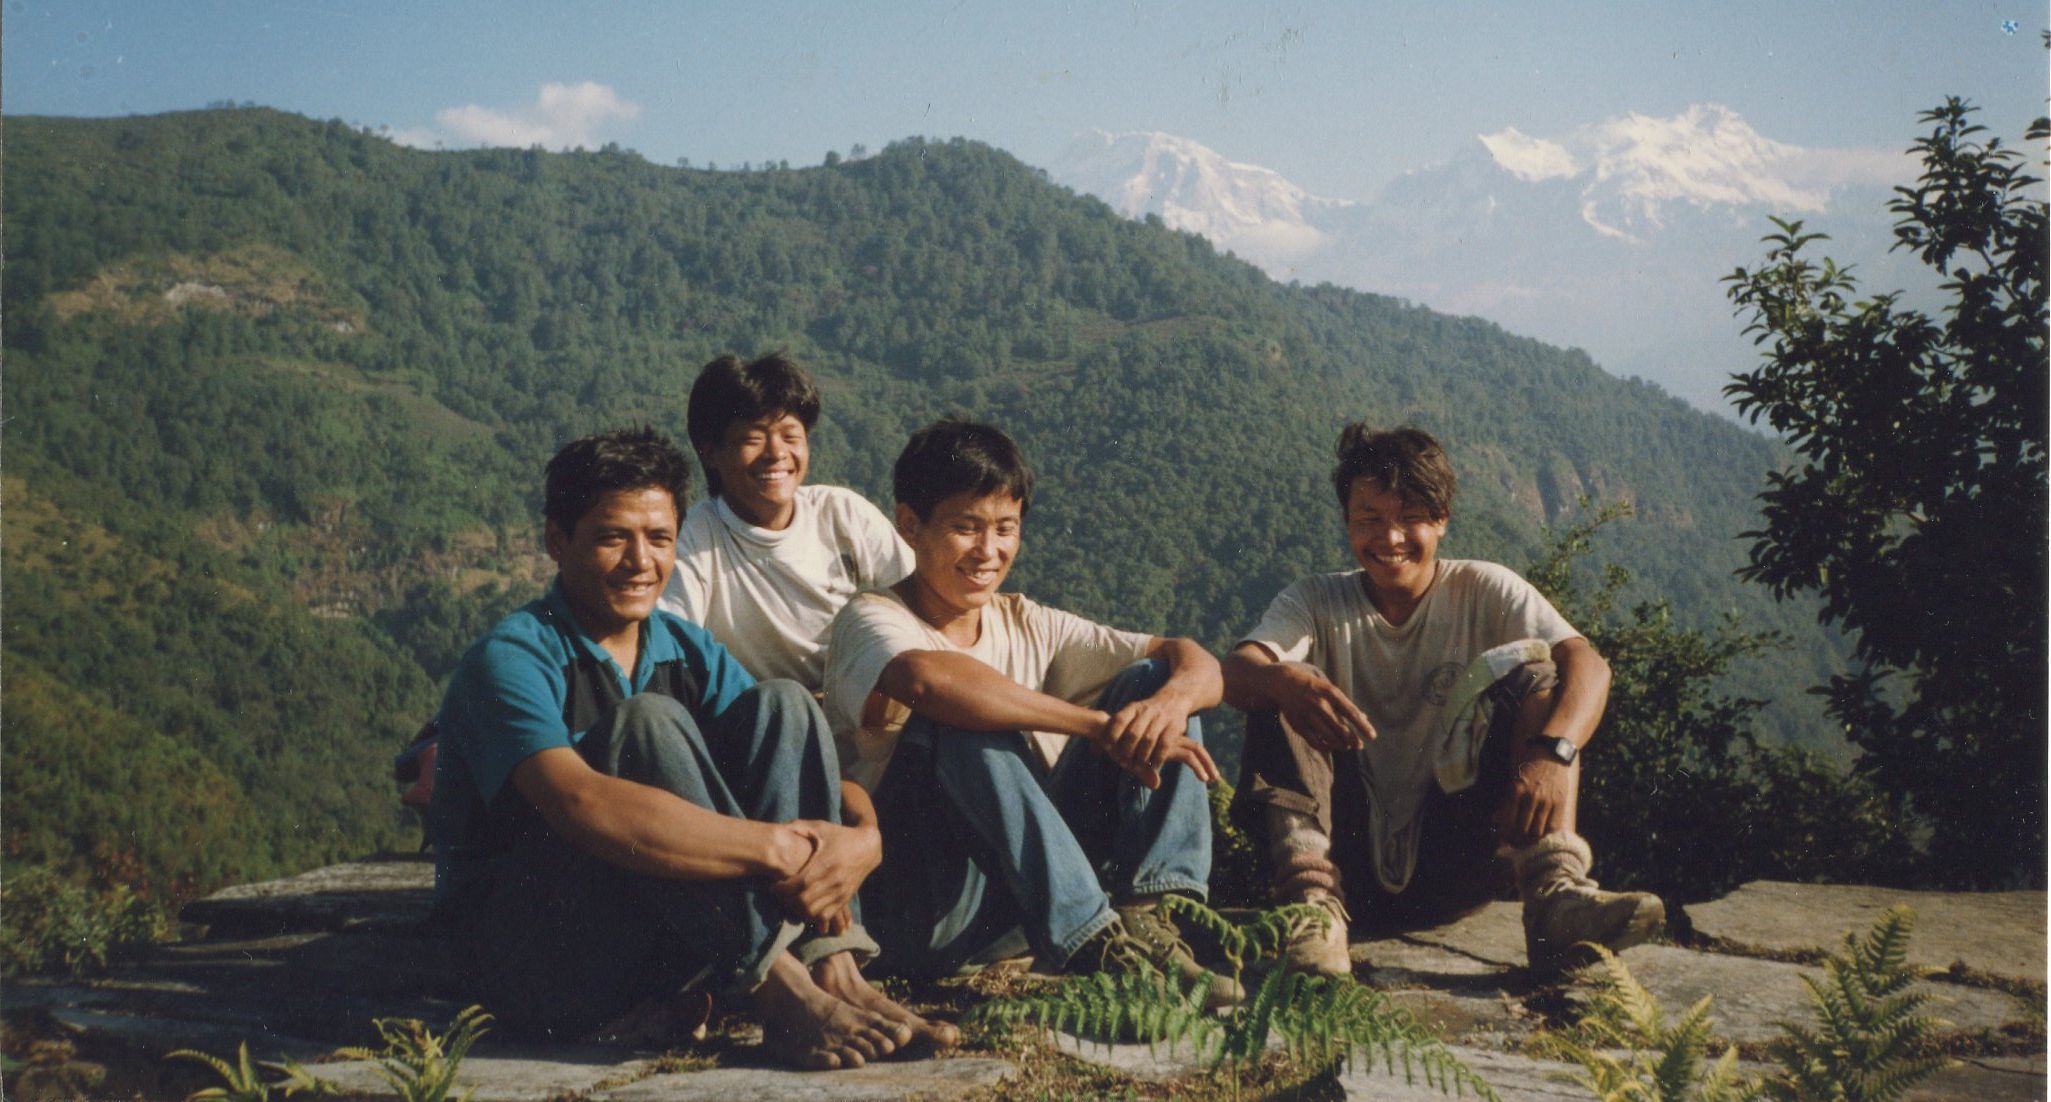 Trekking crew on route to Ganpokhara